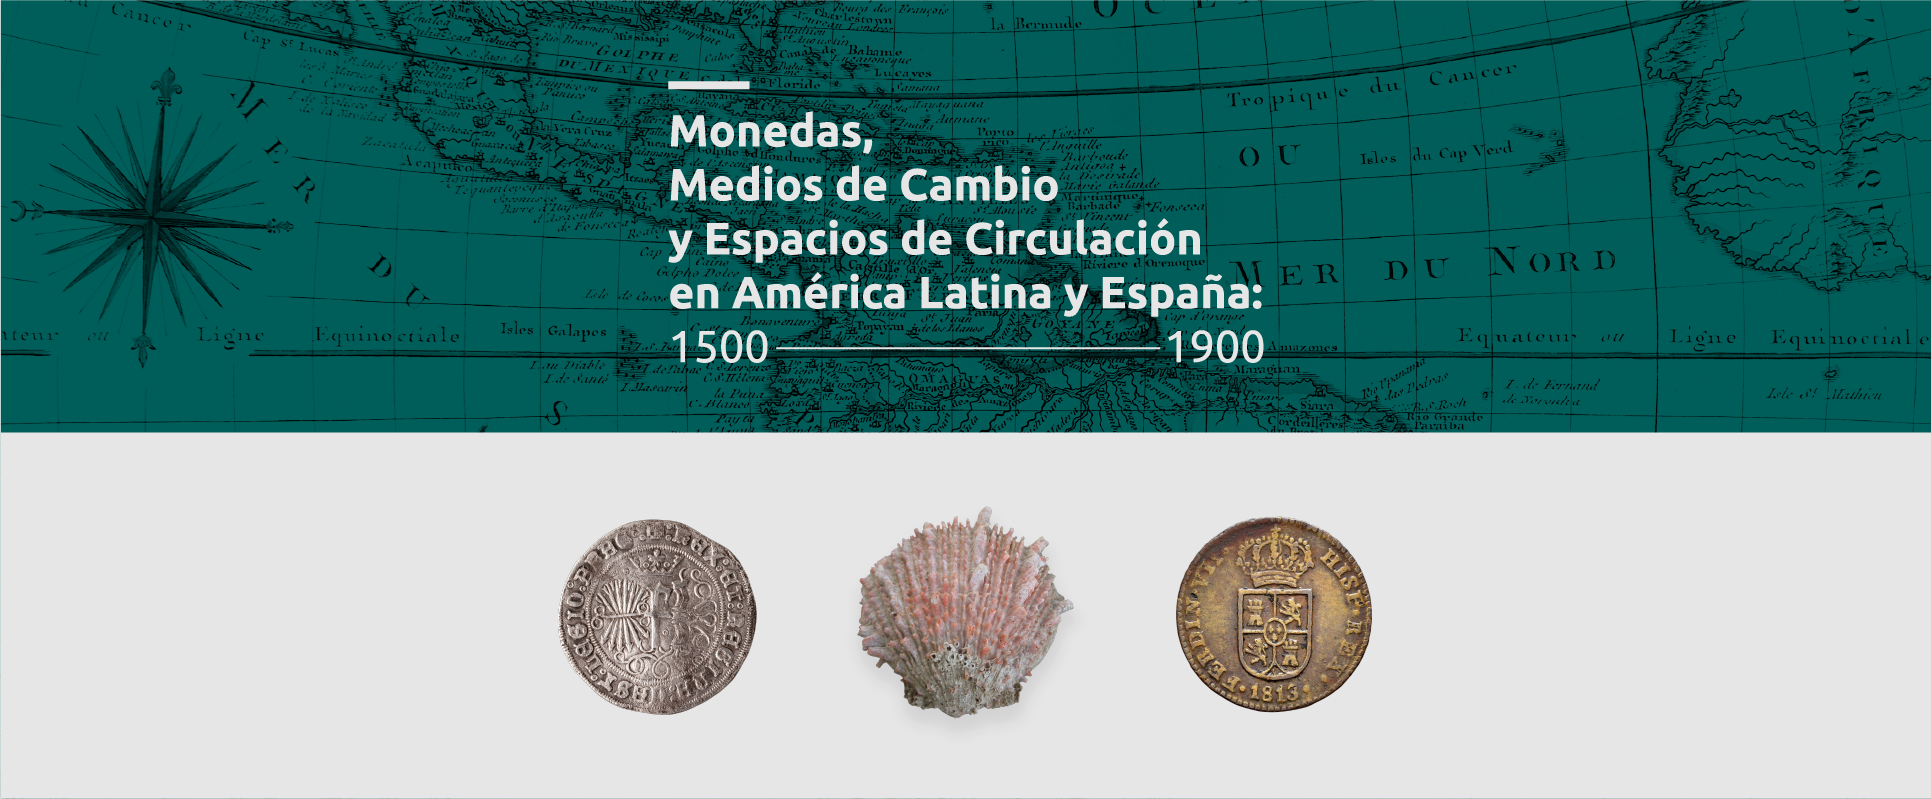 Monedas, Medios de Cambio y Espacios de Circulación en América Latina y España 1500 – 1900